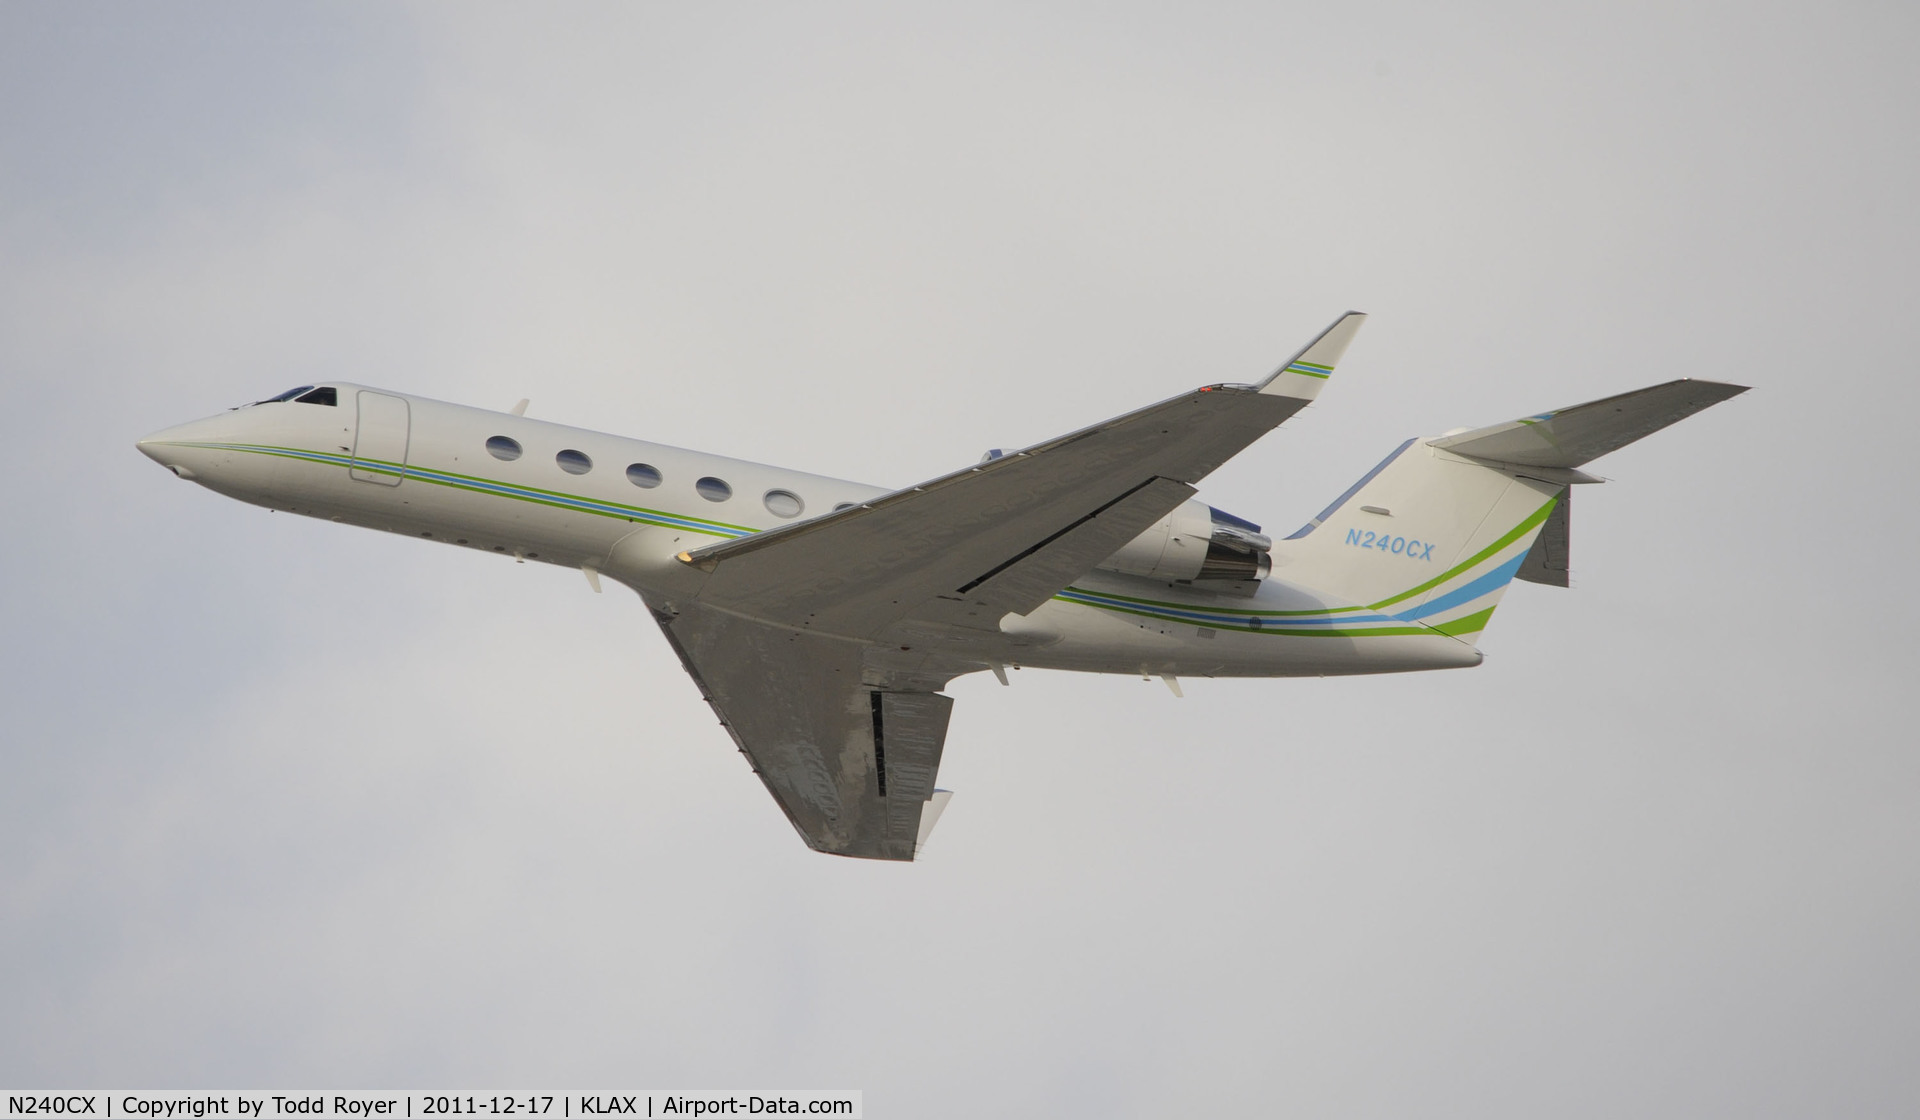 N240CX, 1999 Gulfstream Aerospace G-IV C/N 1370, Departing LAX